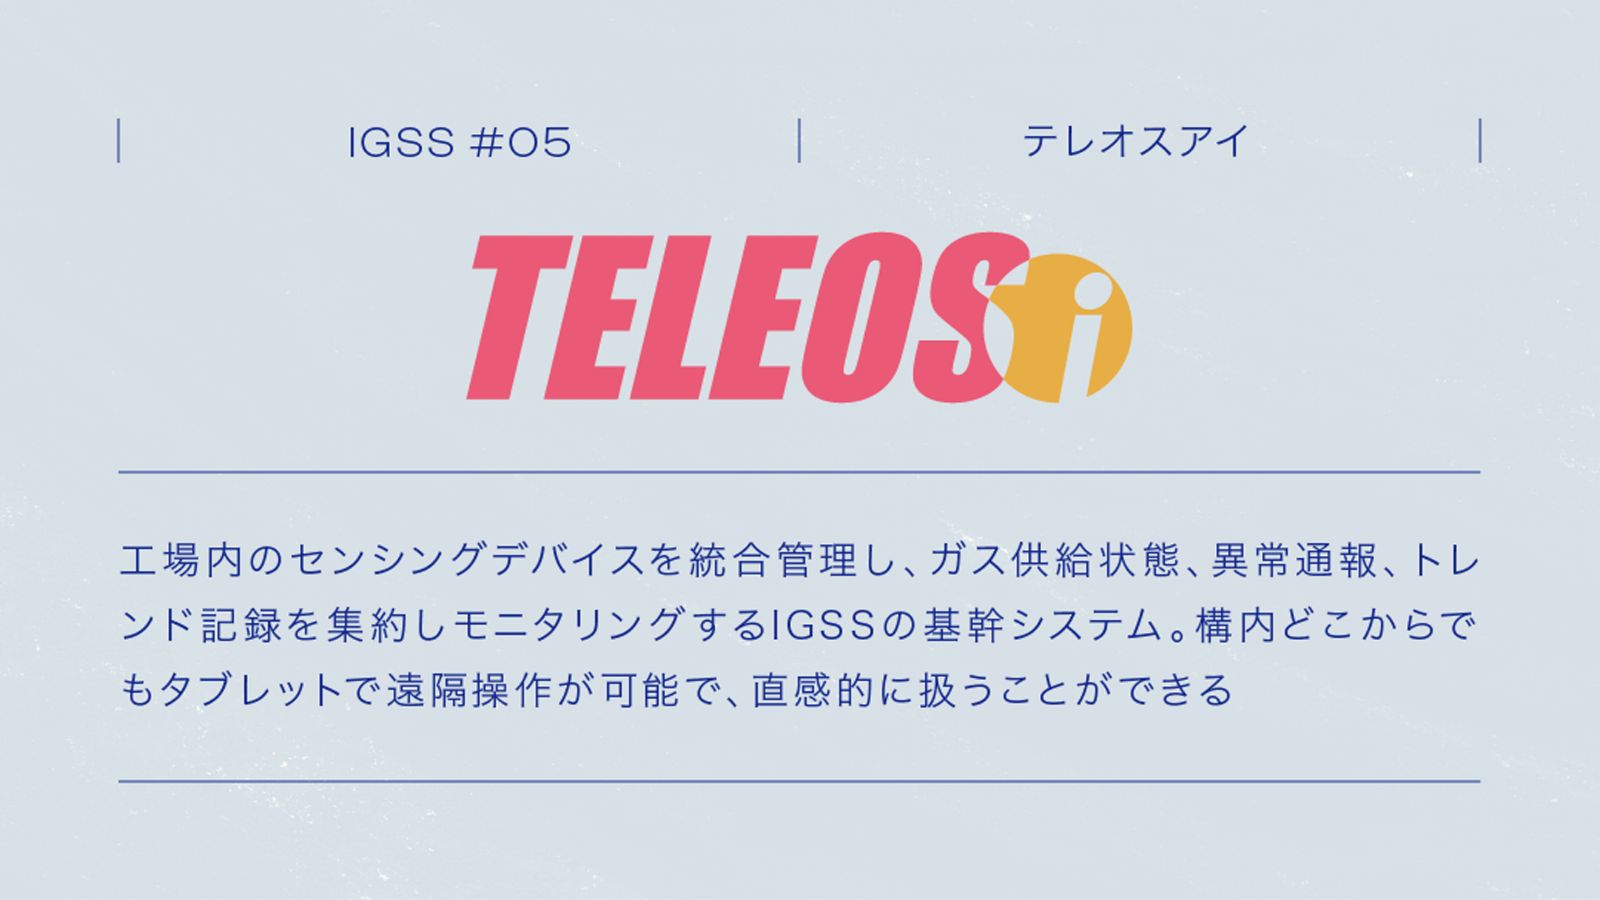 IGSS #05 TELEOSi 工場内のセンシングデバイスを統合管理し、ガス供給状態、異常通報、トレンド記録を集約しモニタリングするIGSSの基幹システム。構内どこからでもタブレットで遠隔操作が可能で､ 直感的に扱うことができる